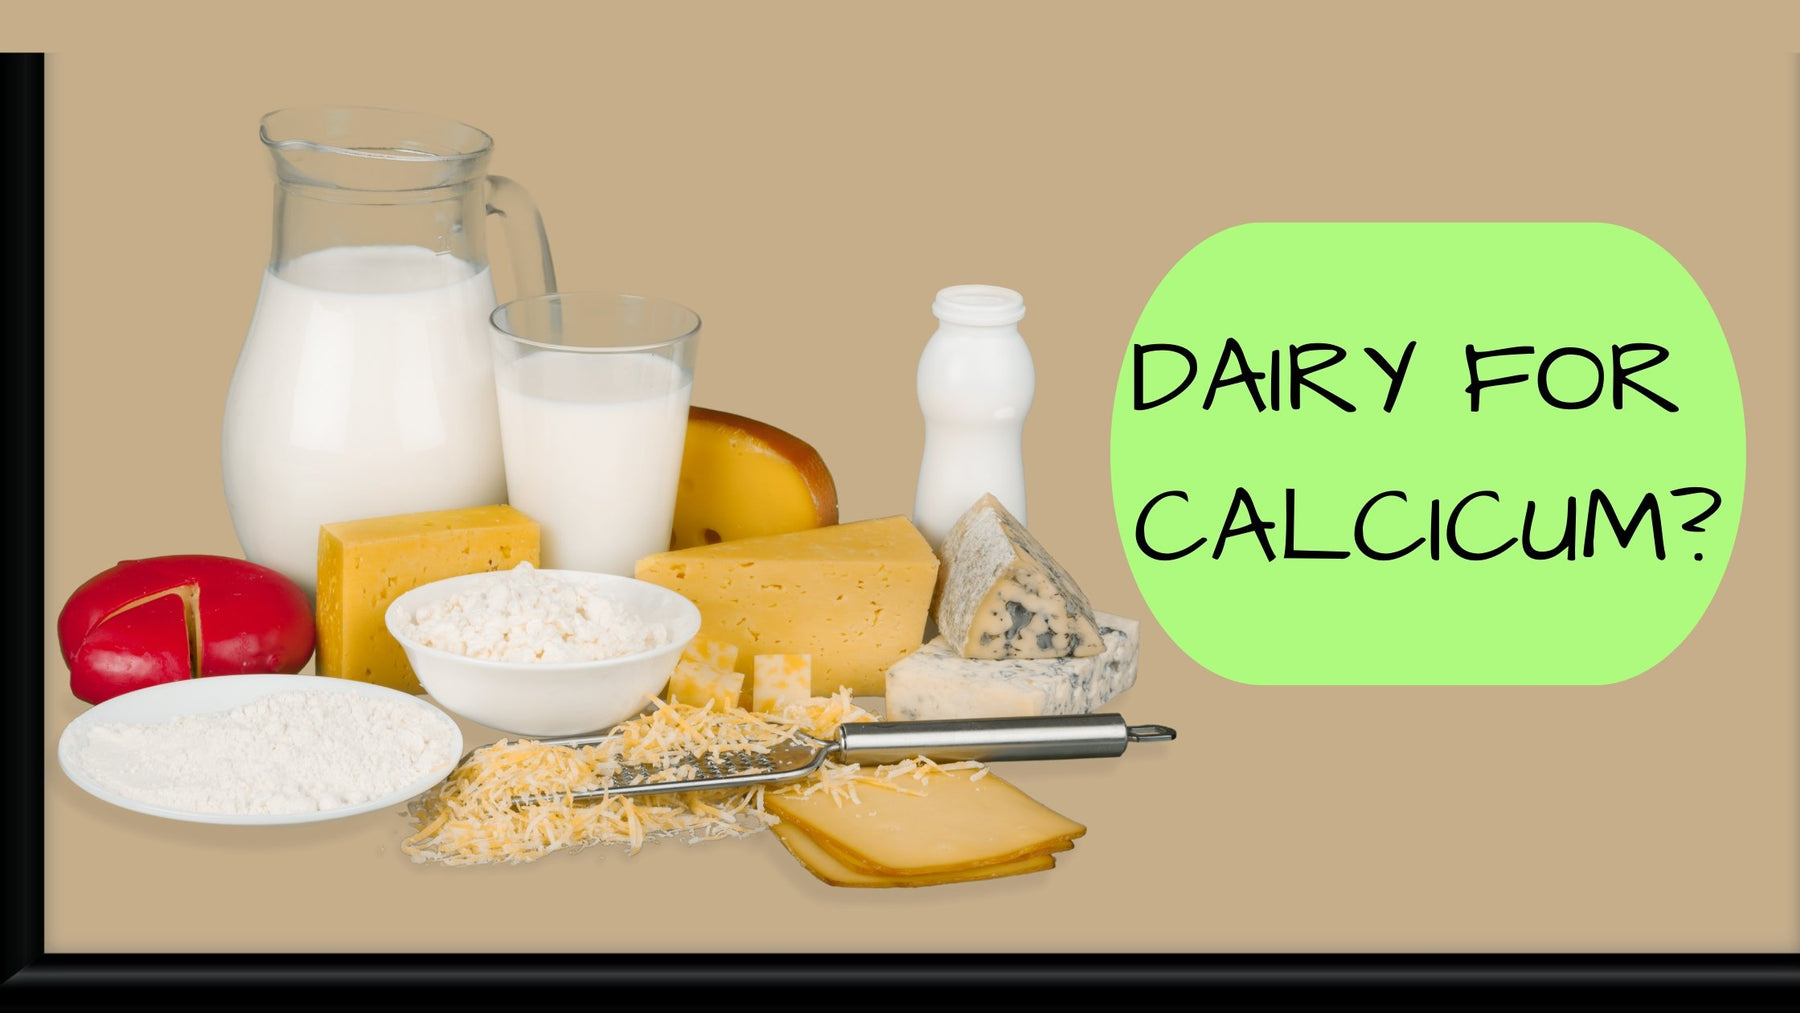 Dairy for calcium? - Roshni Sanghvi